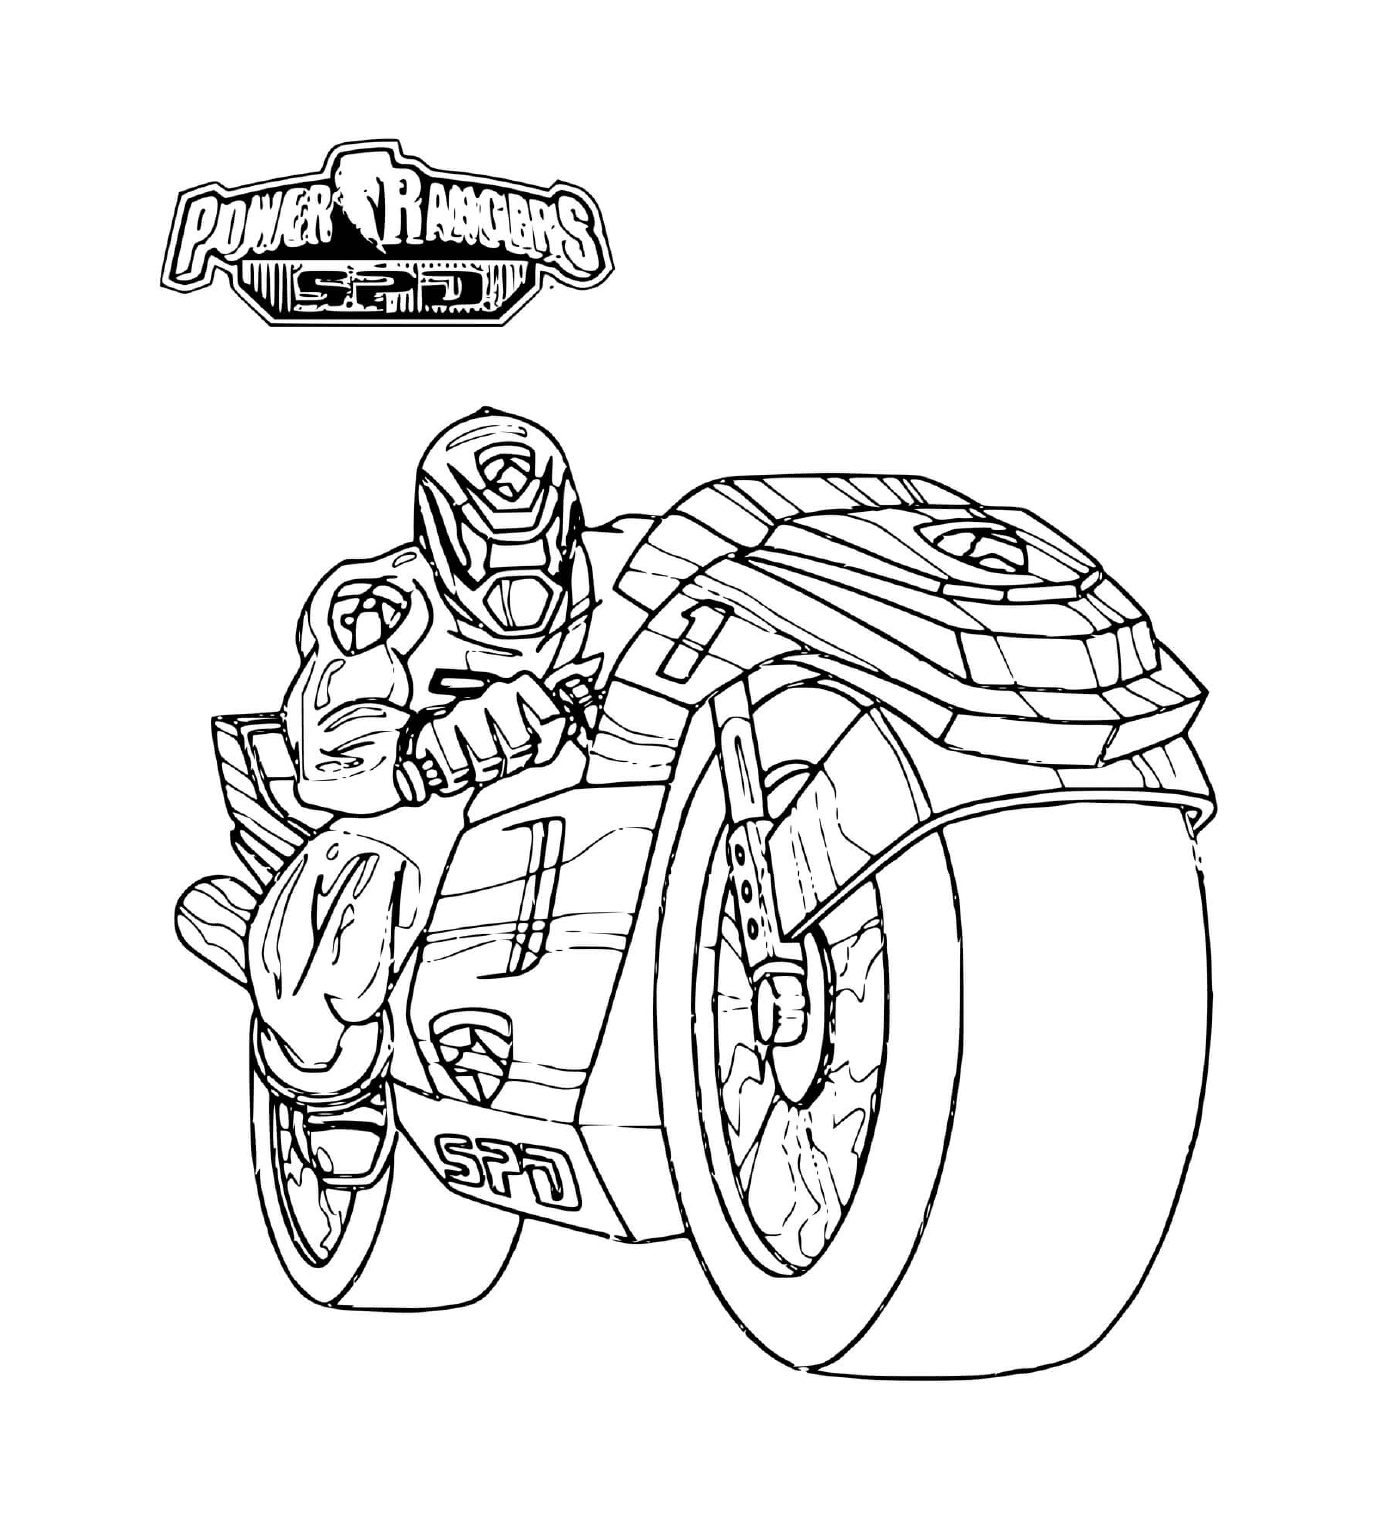  Power Ranger auf einem Motorrad 